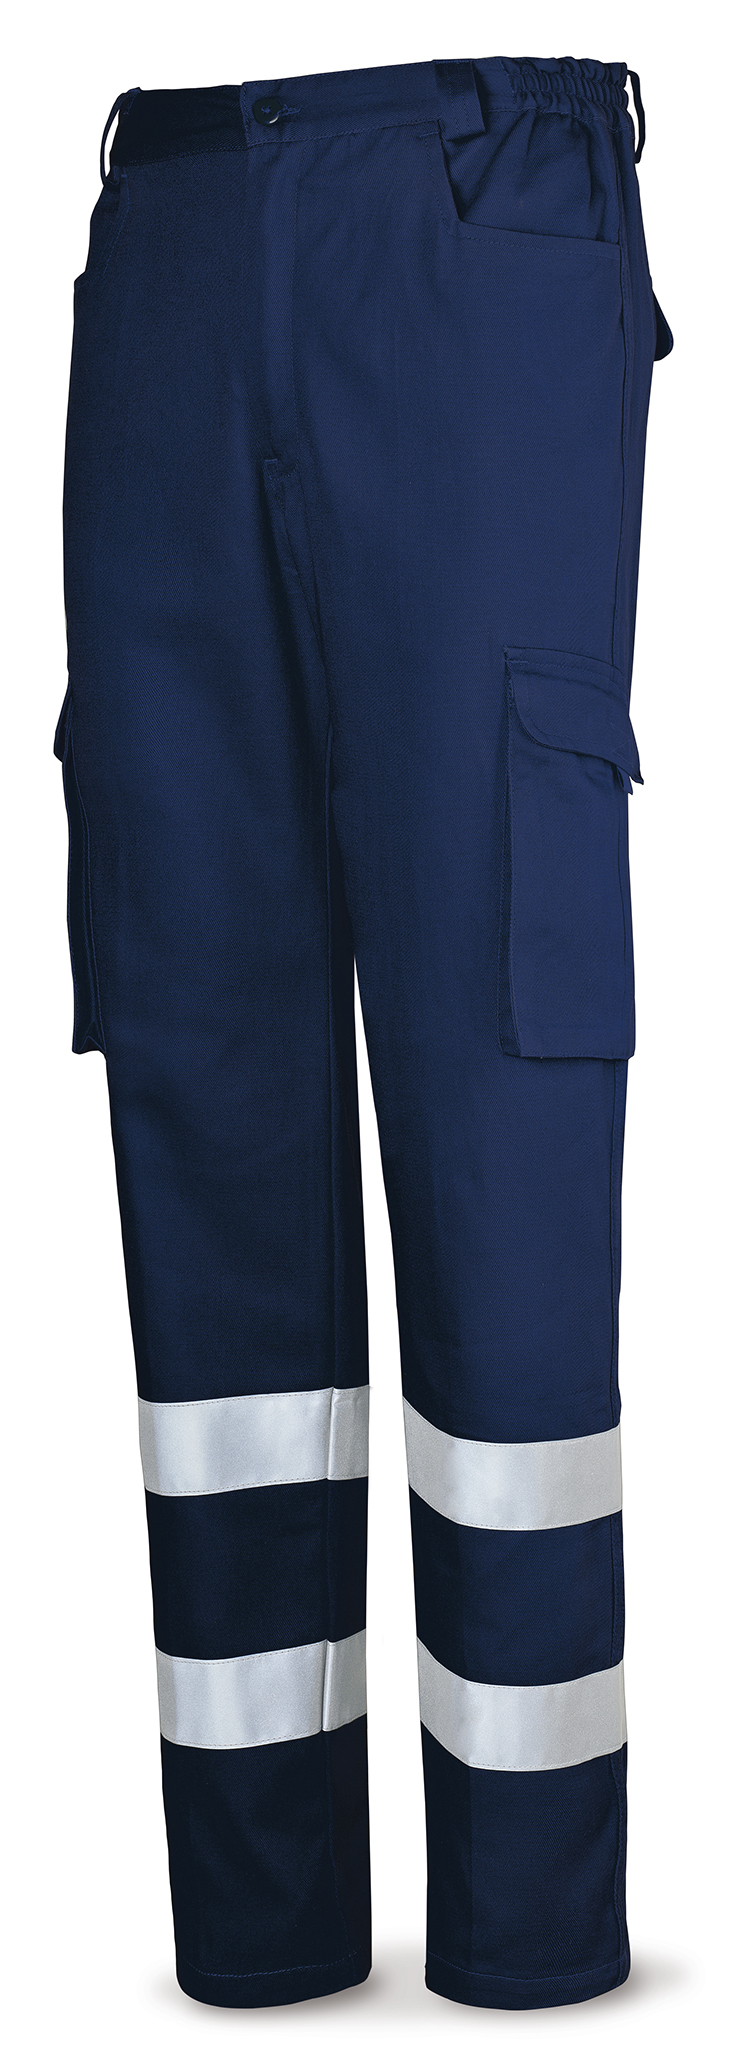 488-PACR Top Vestuario Laboral Serie Top Pantalón azul marino algodón con bandas reflectantes 245 g.